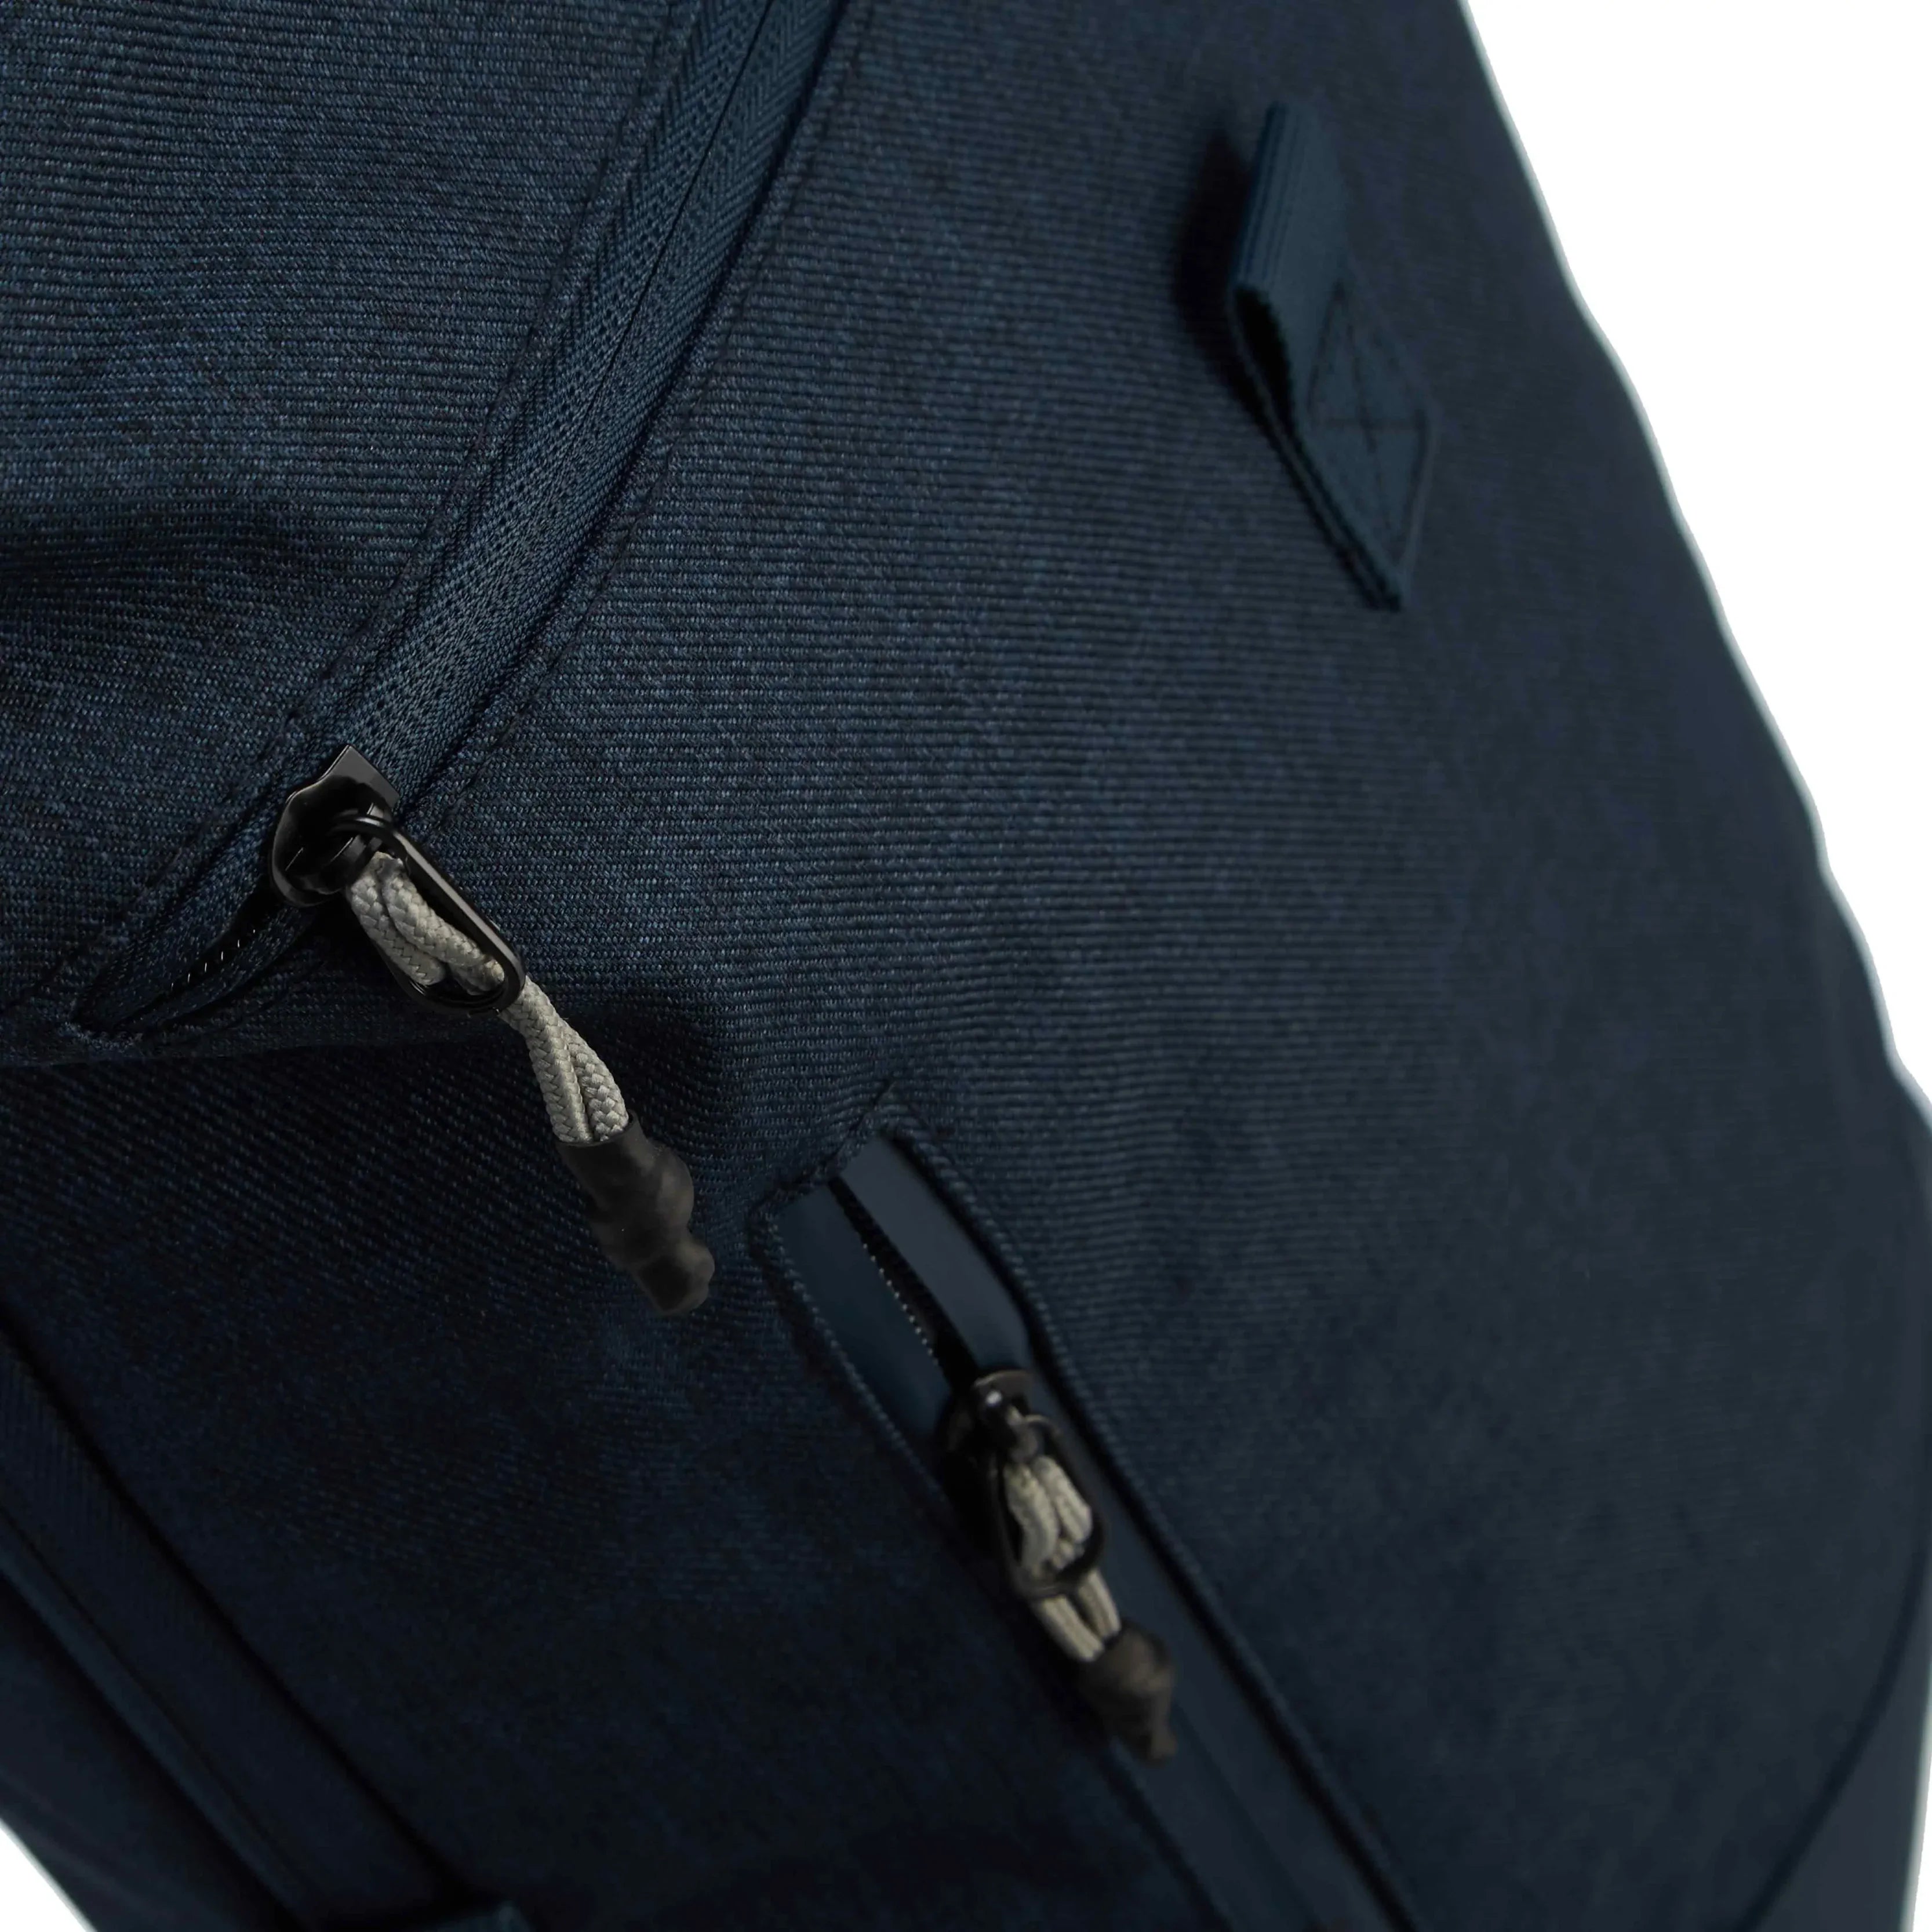 koffer-direkt.de Roll-top backpack 41 cm - black